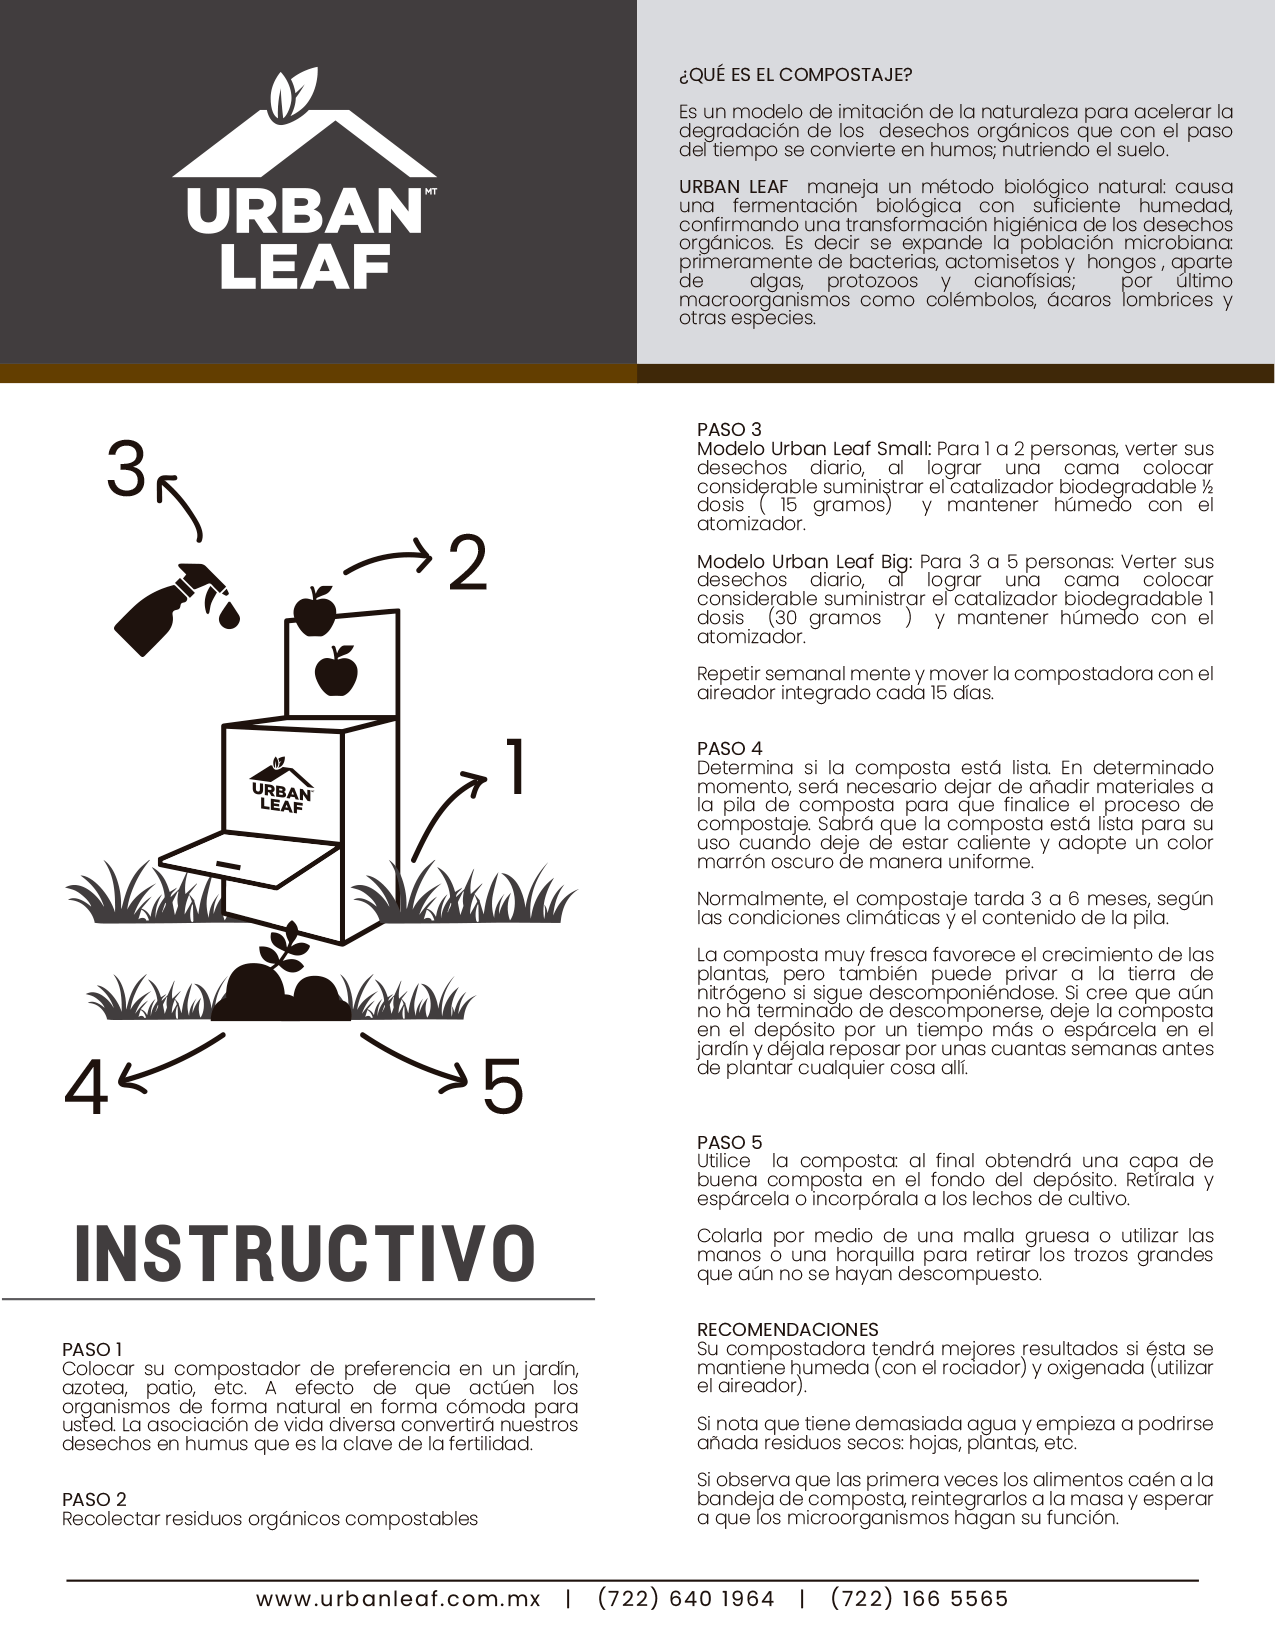 Instructivo instalación urban leaf